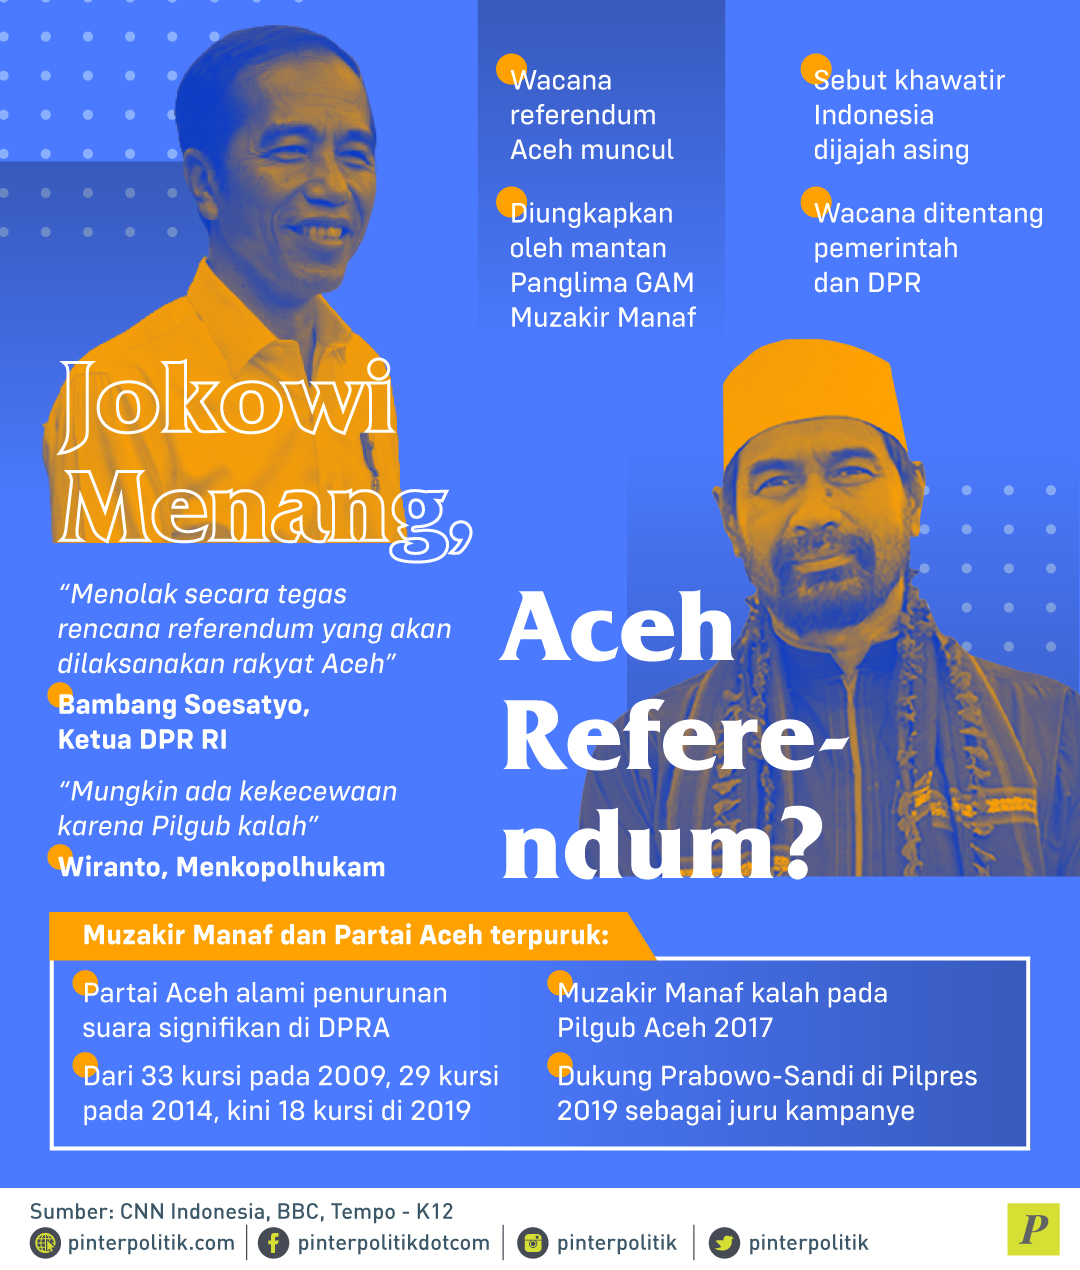 Wacana referendum Aceh Mantan Panglima GAM Muzair Manaf